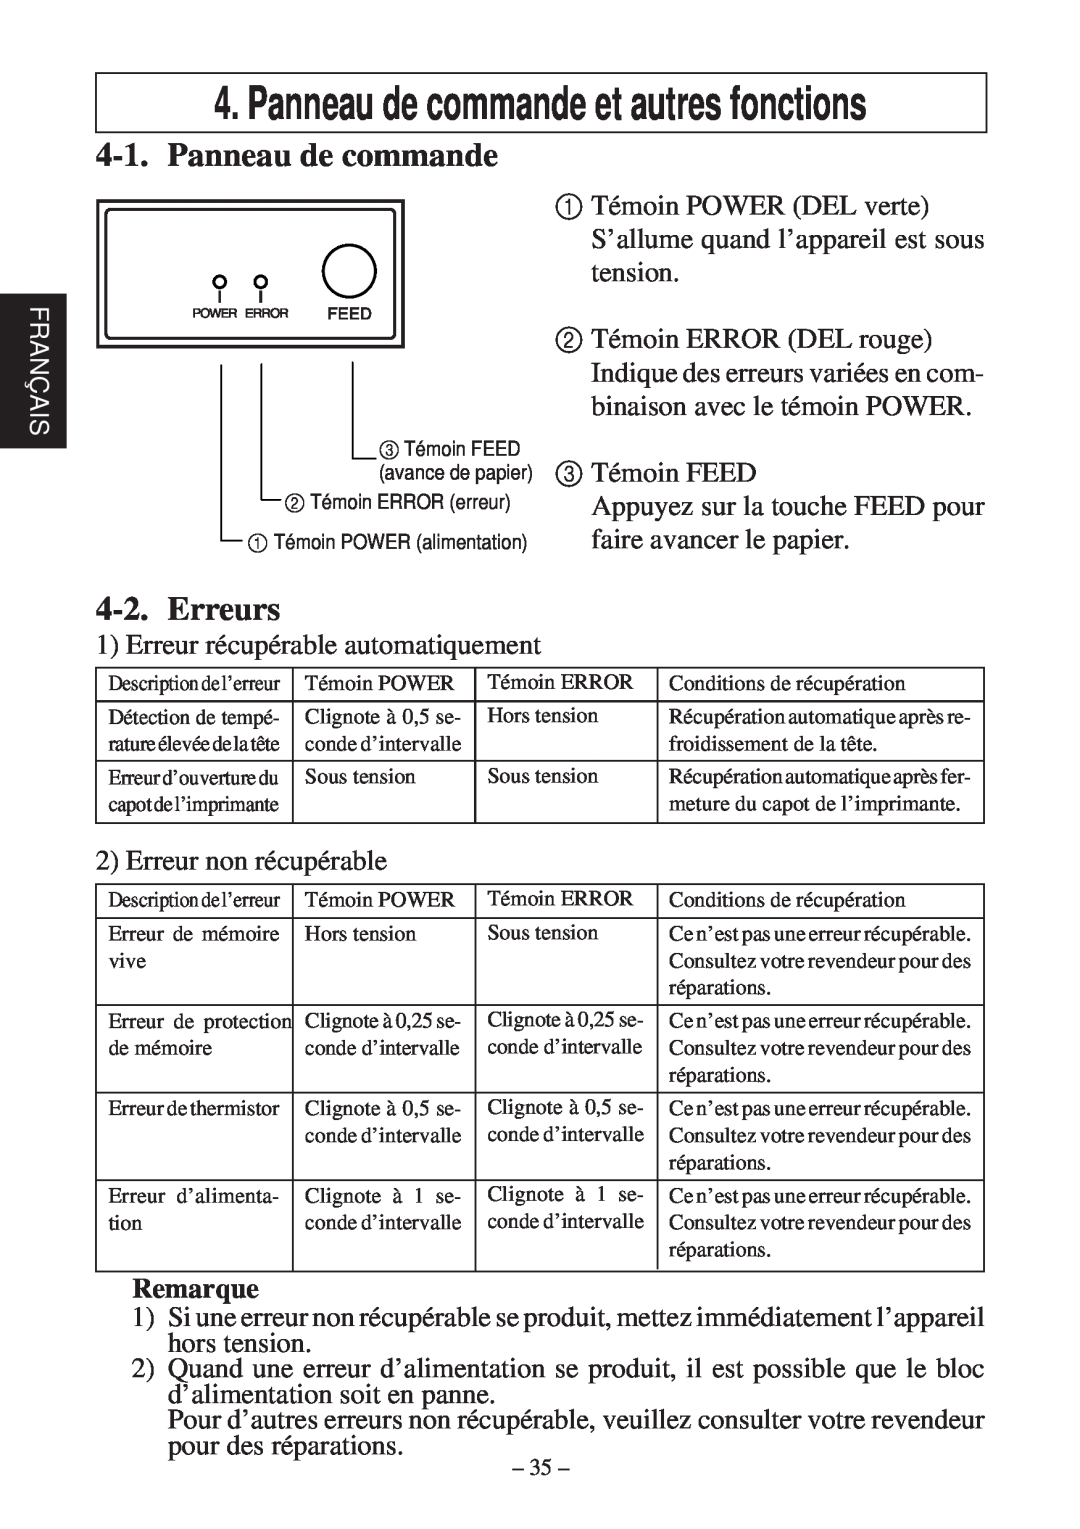 Star Micronics TSP600 user manual Erreurs, Remarque, Panneau de commande et autres fonctions, Français 